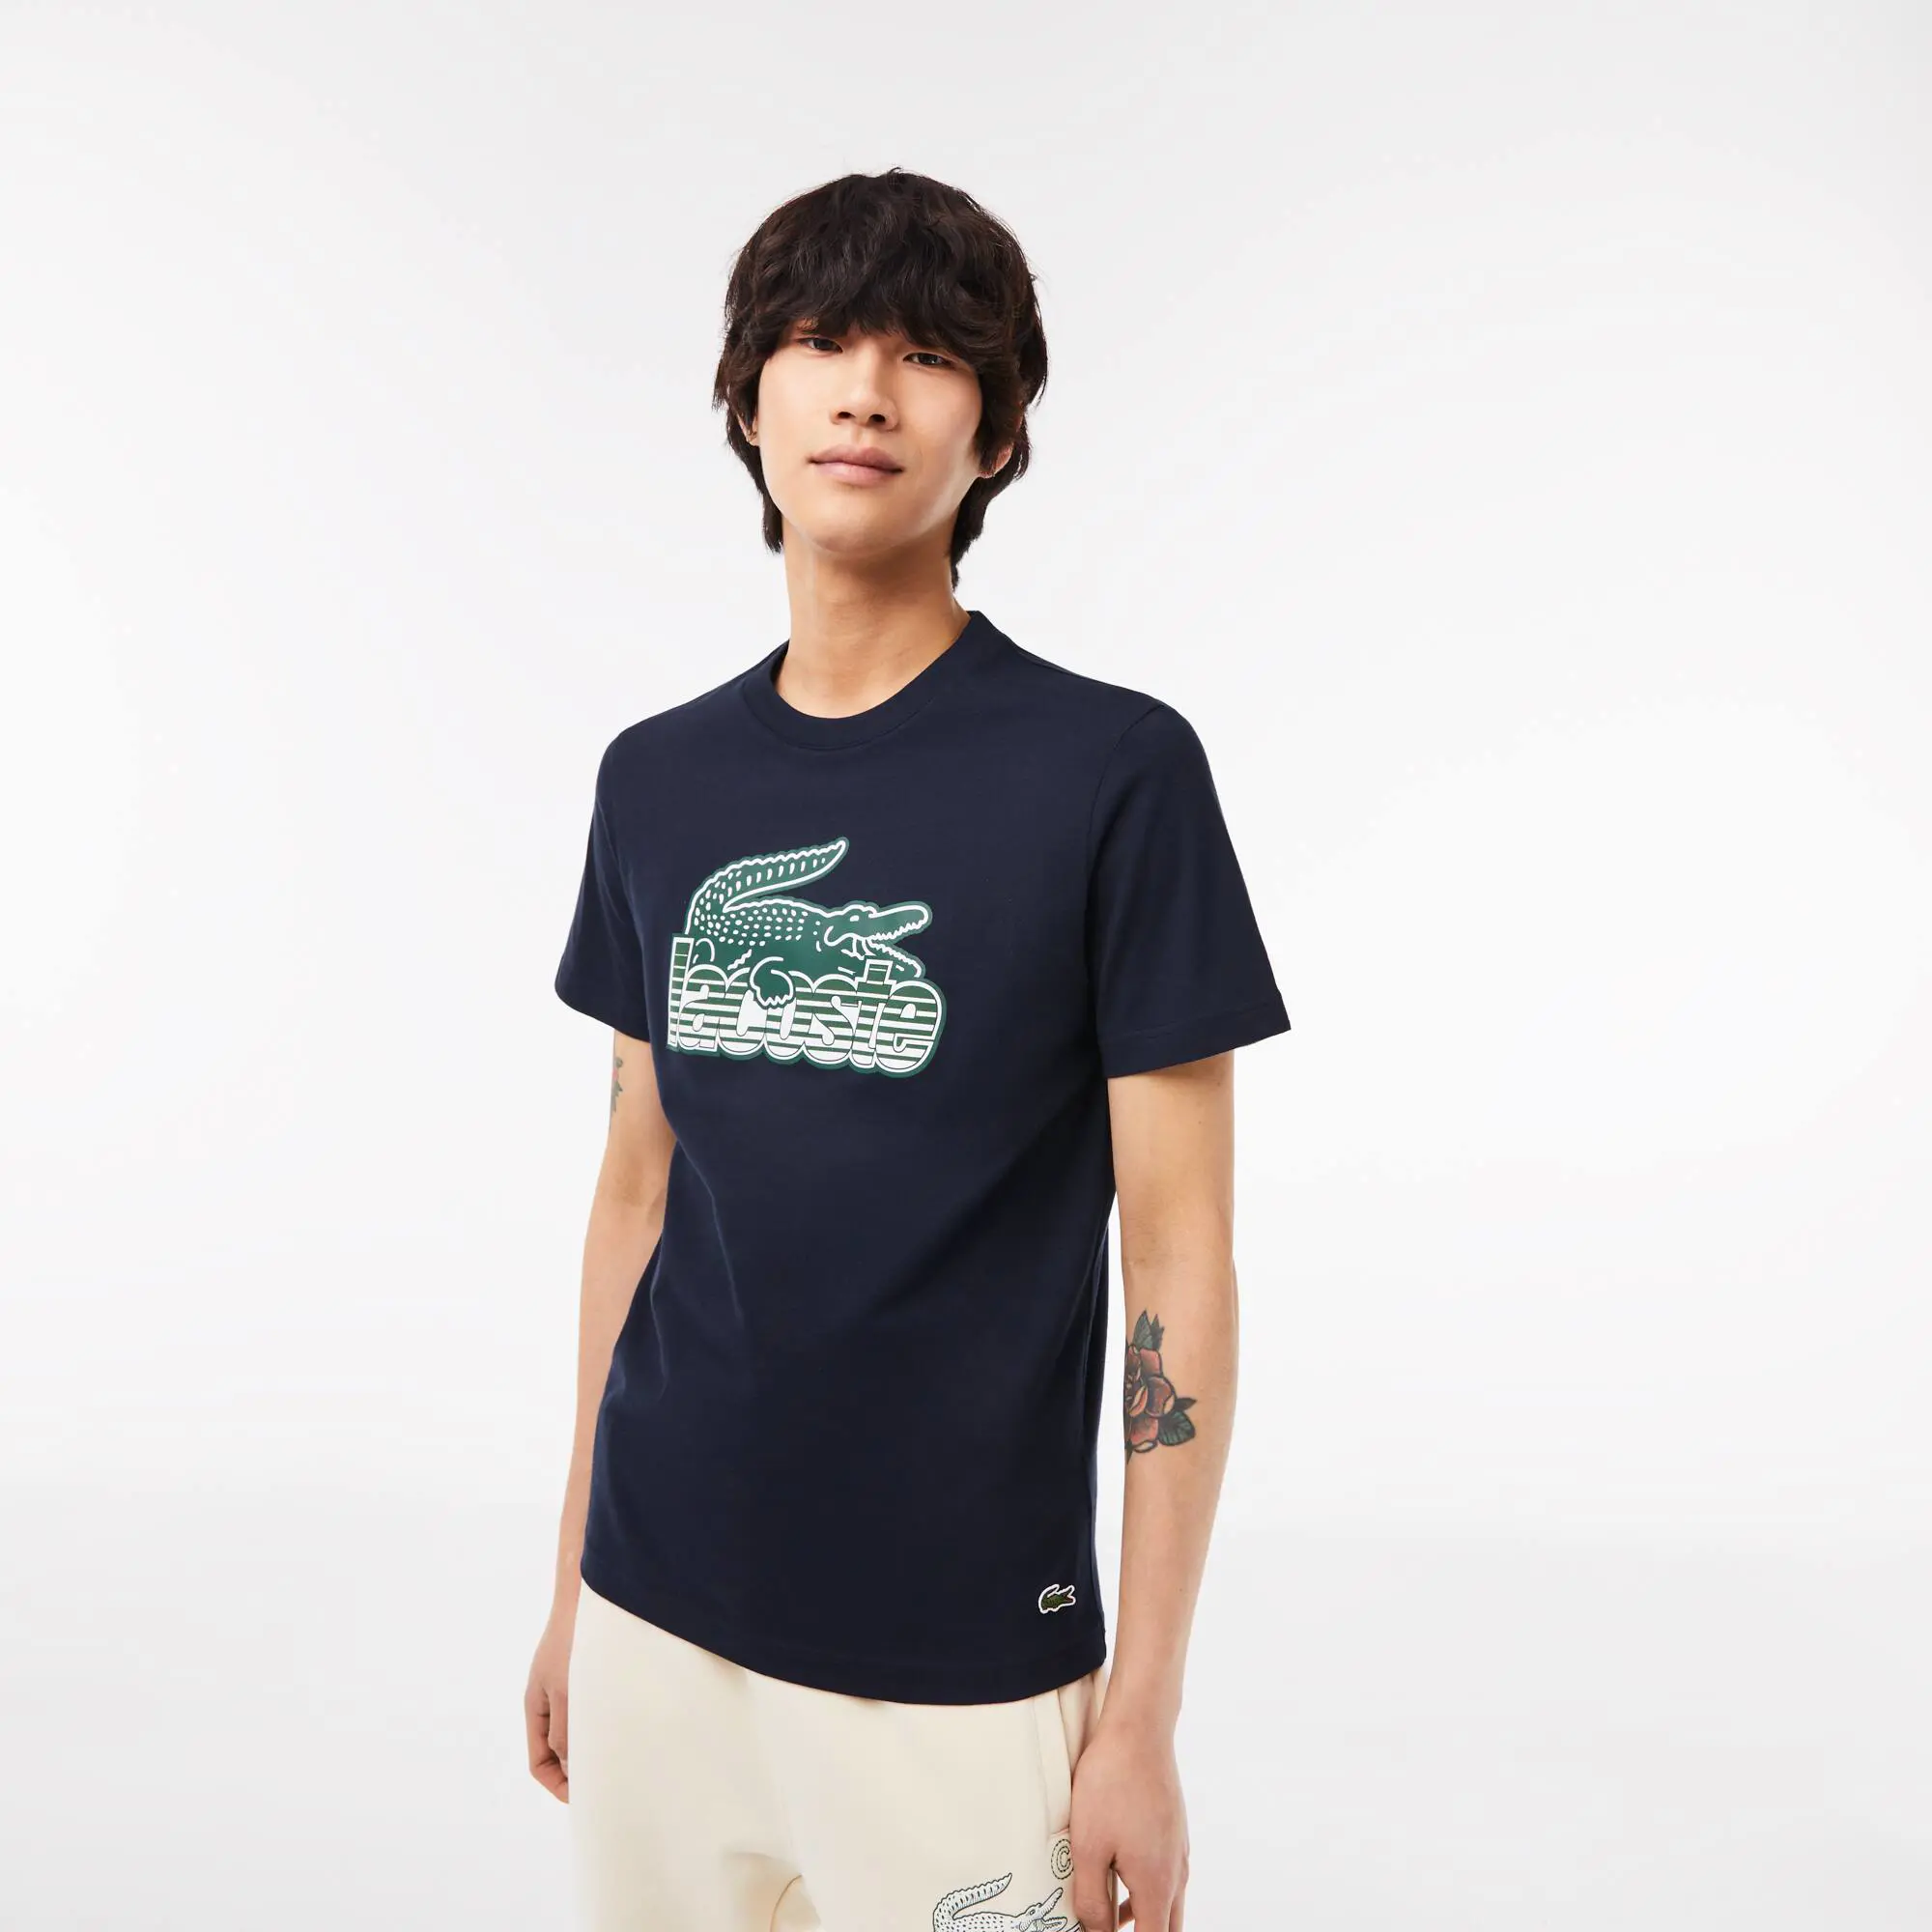 Lacoste T-shirt com estampado de jersey de algodão Lacoste para homem. 1